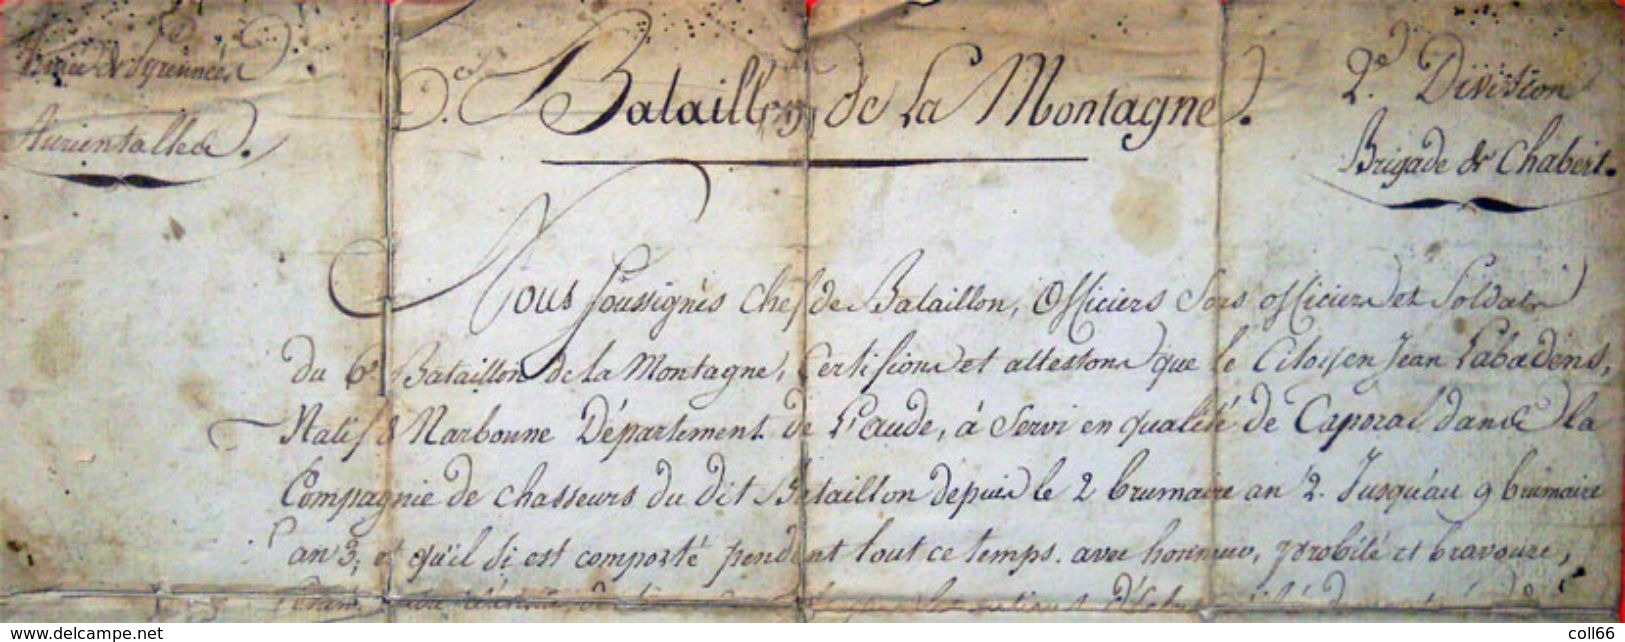 1793-4 Armée Des Pyrénées Orientales Bataillon De Montagne Catalunya Révolution Caporal Prise Fort Bellegarde Le Perthus - Historische Dokumente